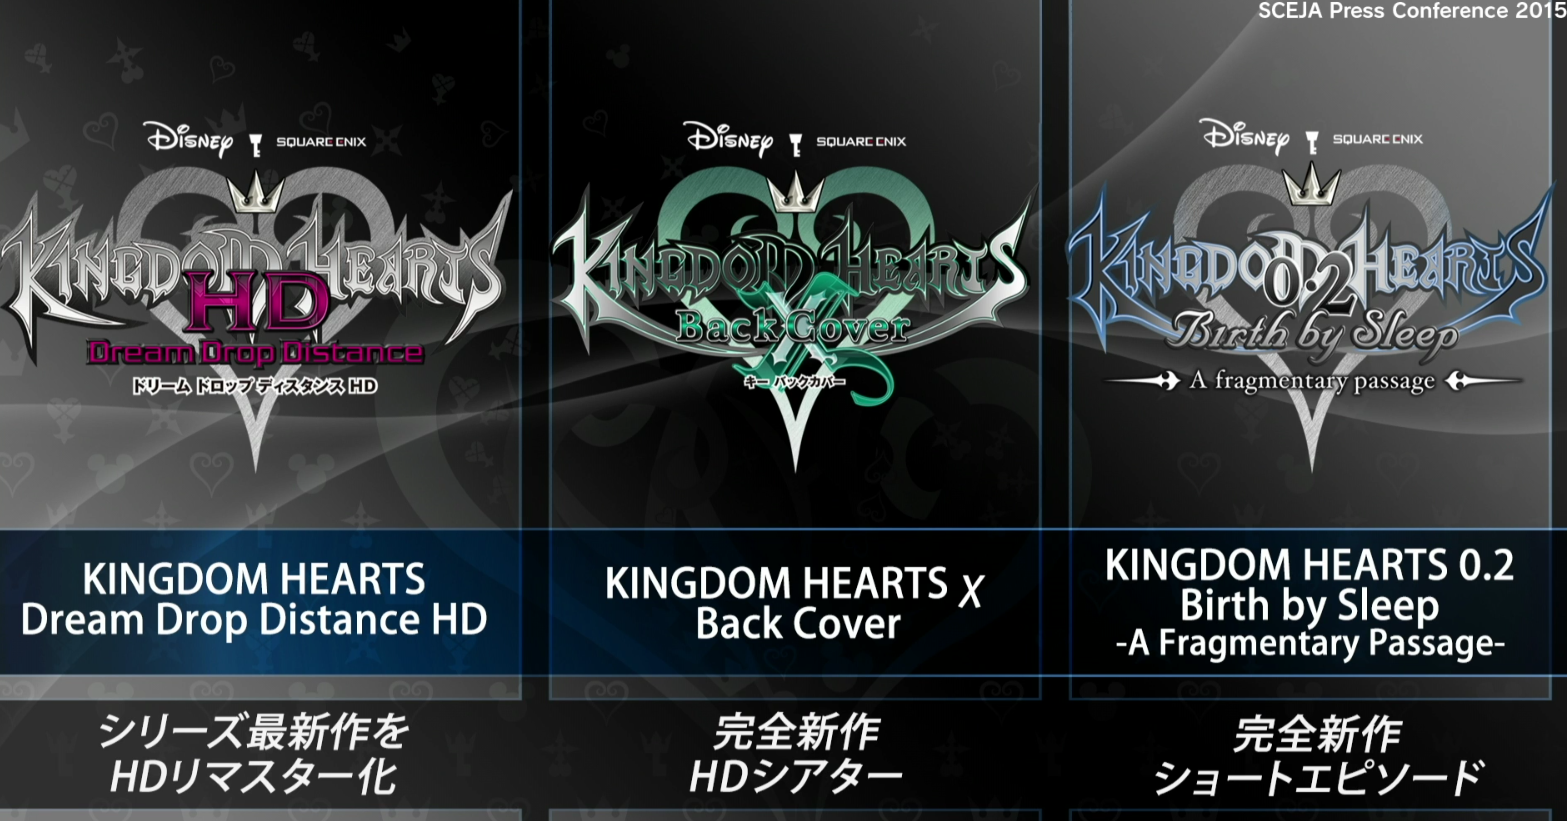 Mais um Kingdom Hearts anunciado  Khdddps4lppjv